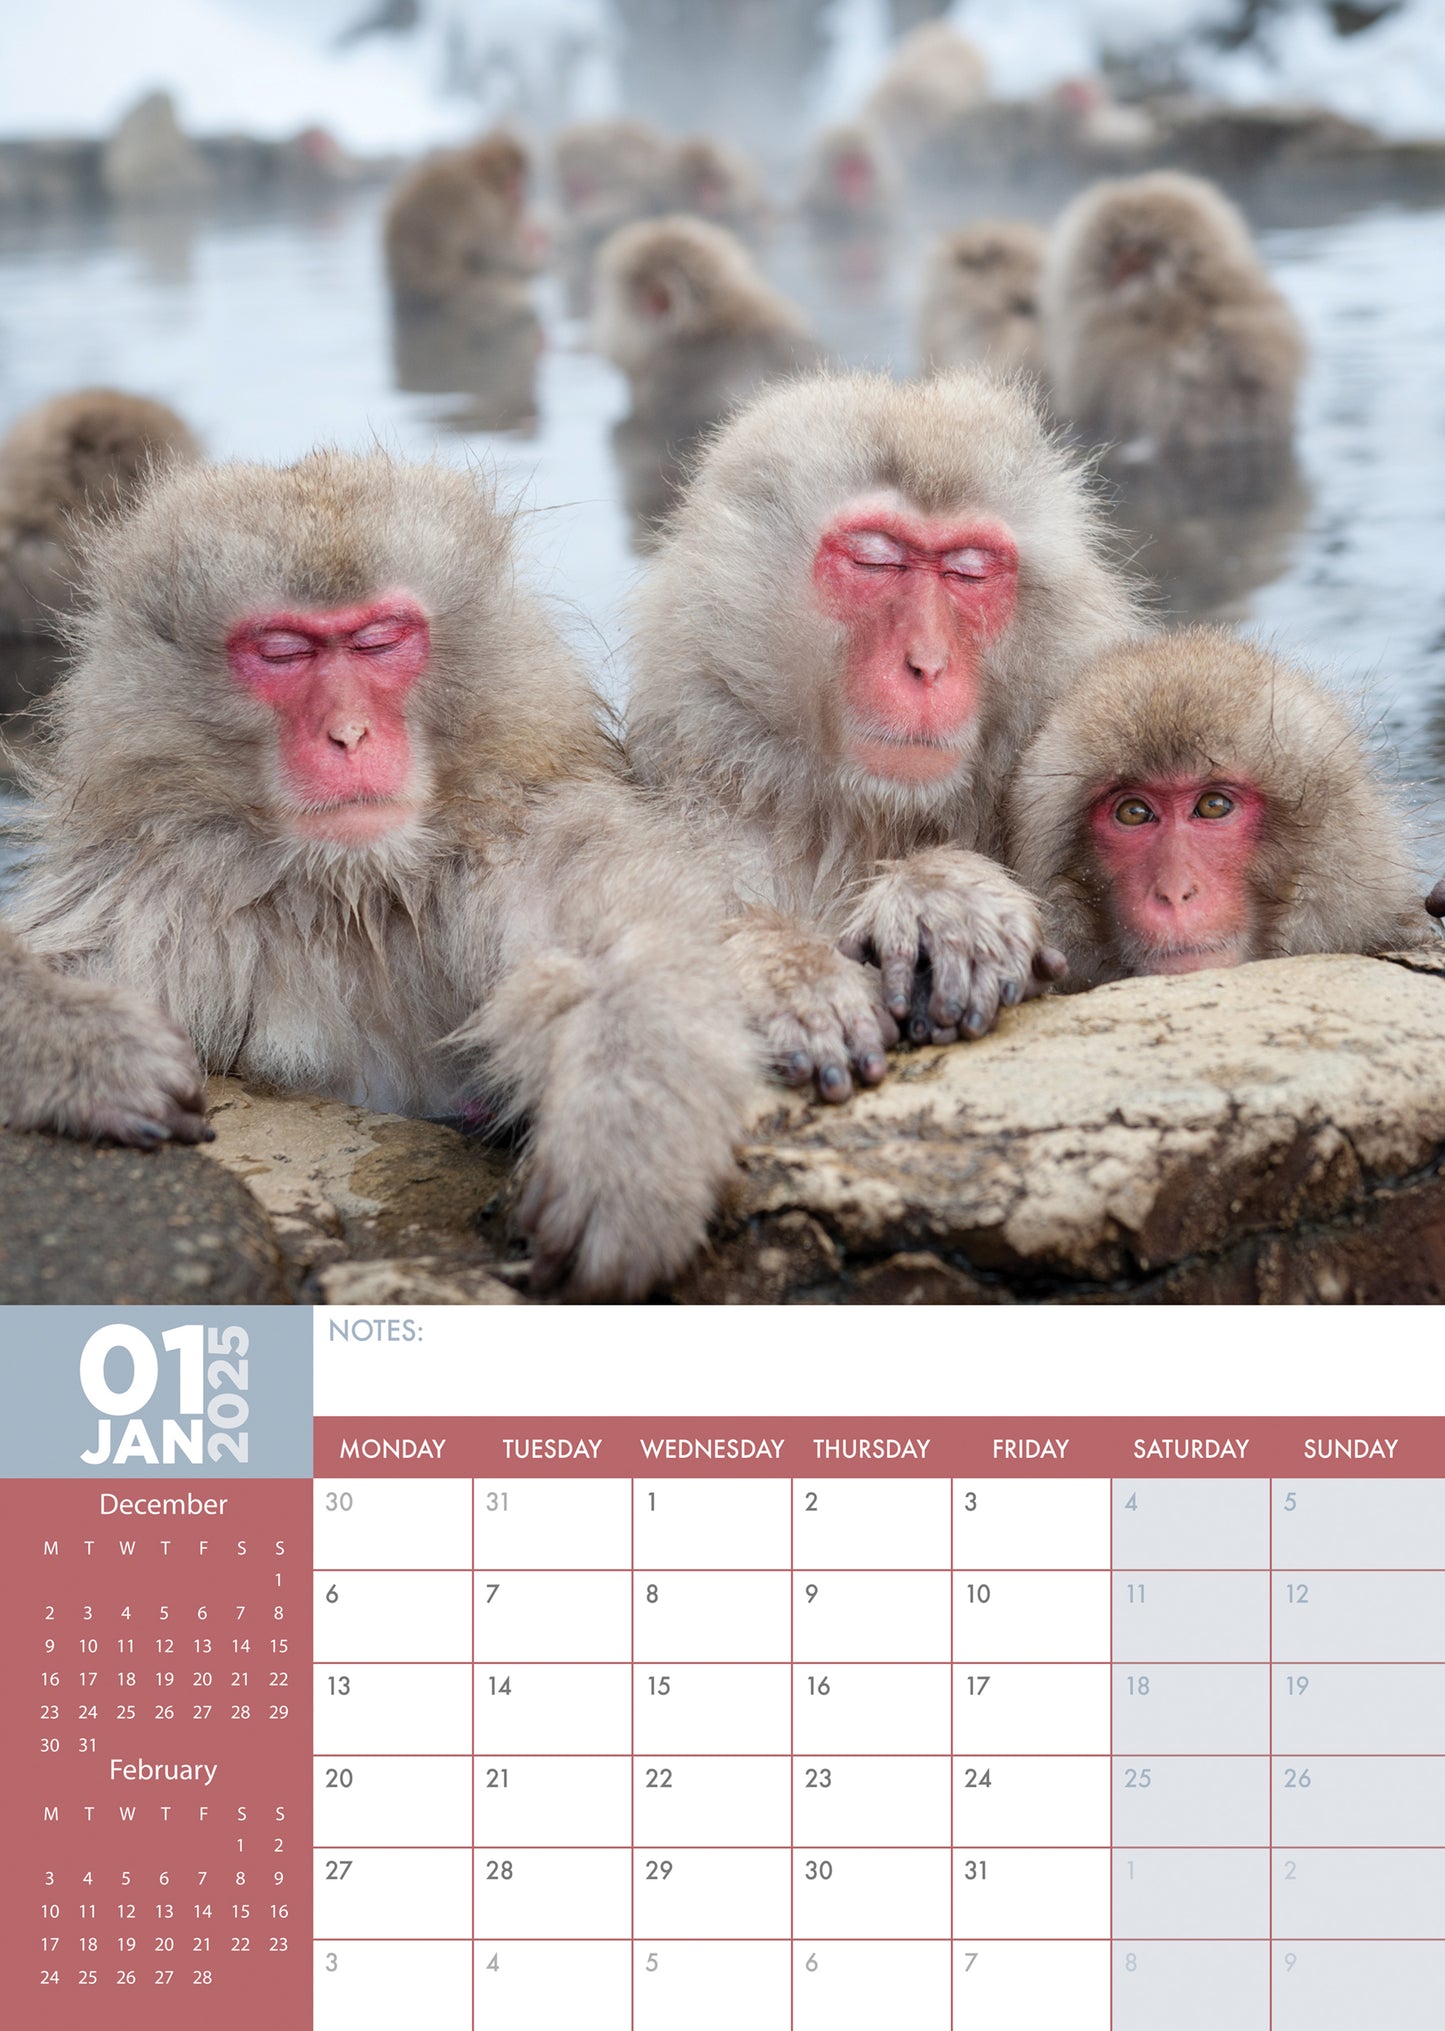 Monkeys Calendar 2025